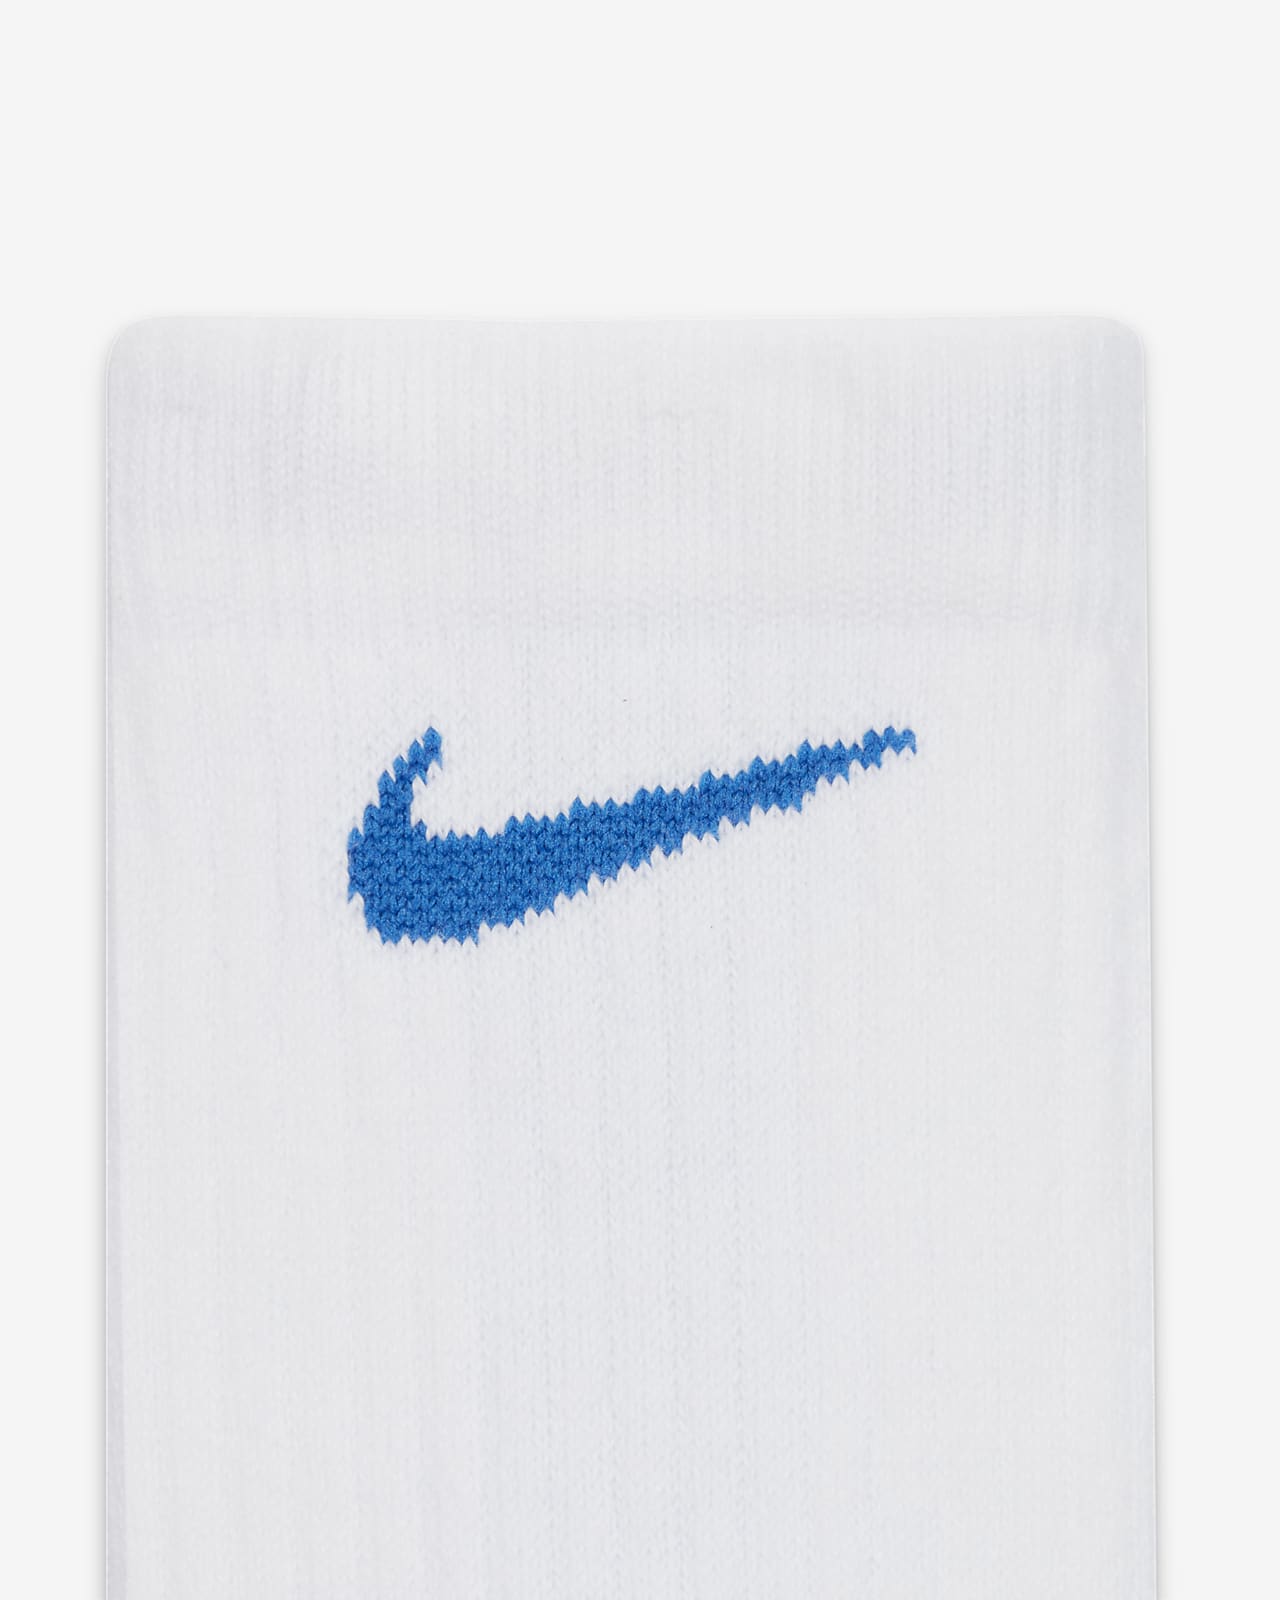 Nike NBA Grip Power Basketball Crew Socks - Size XXL